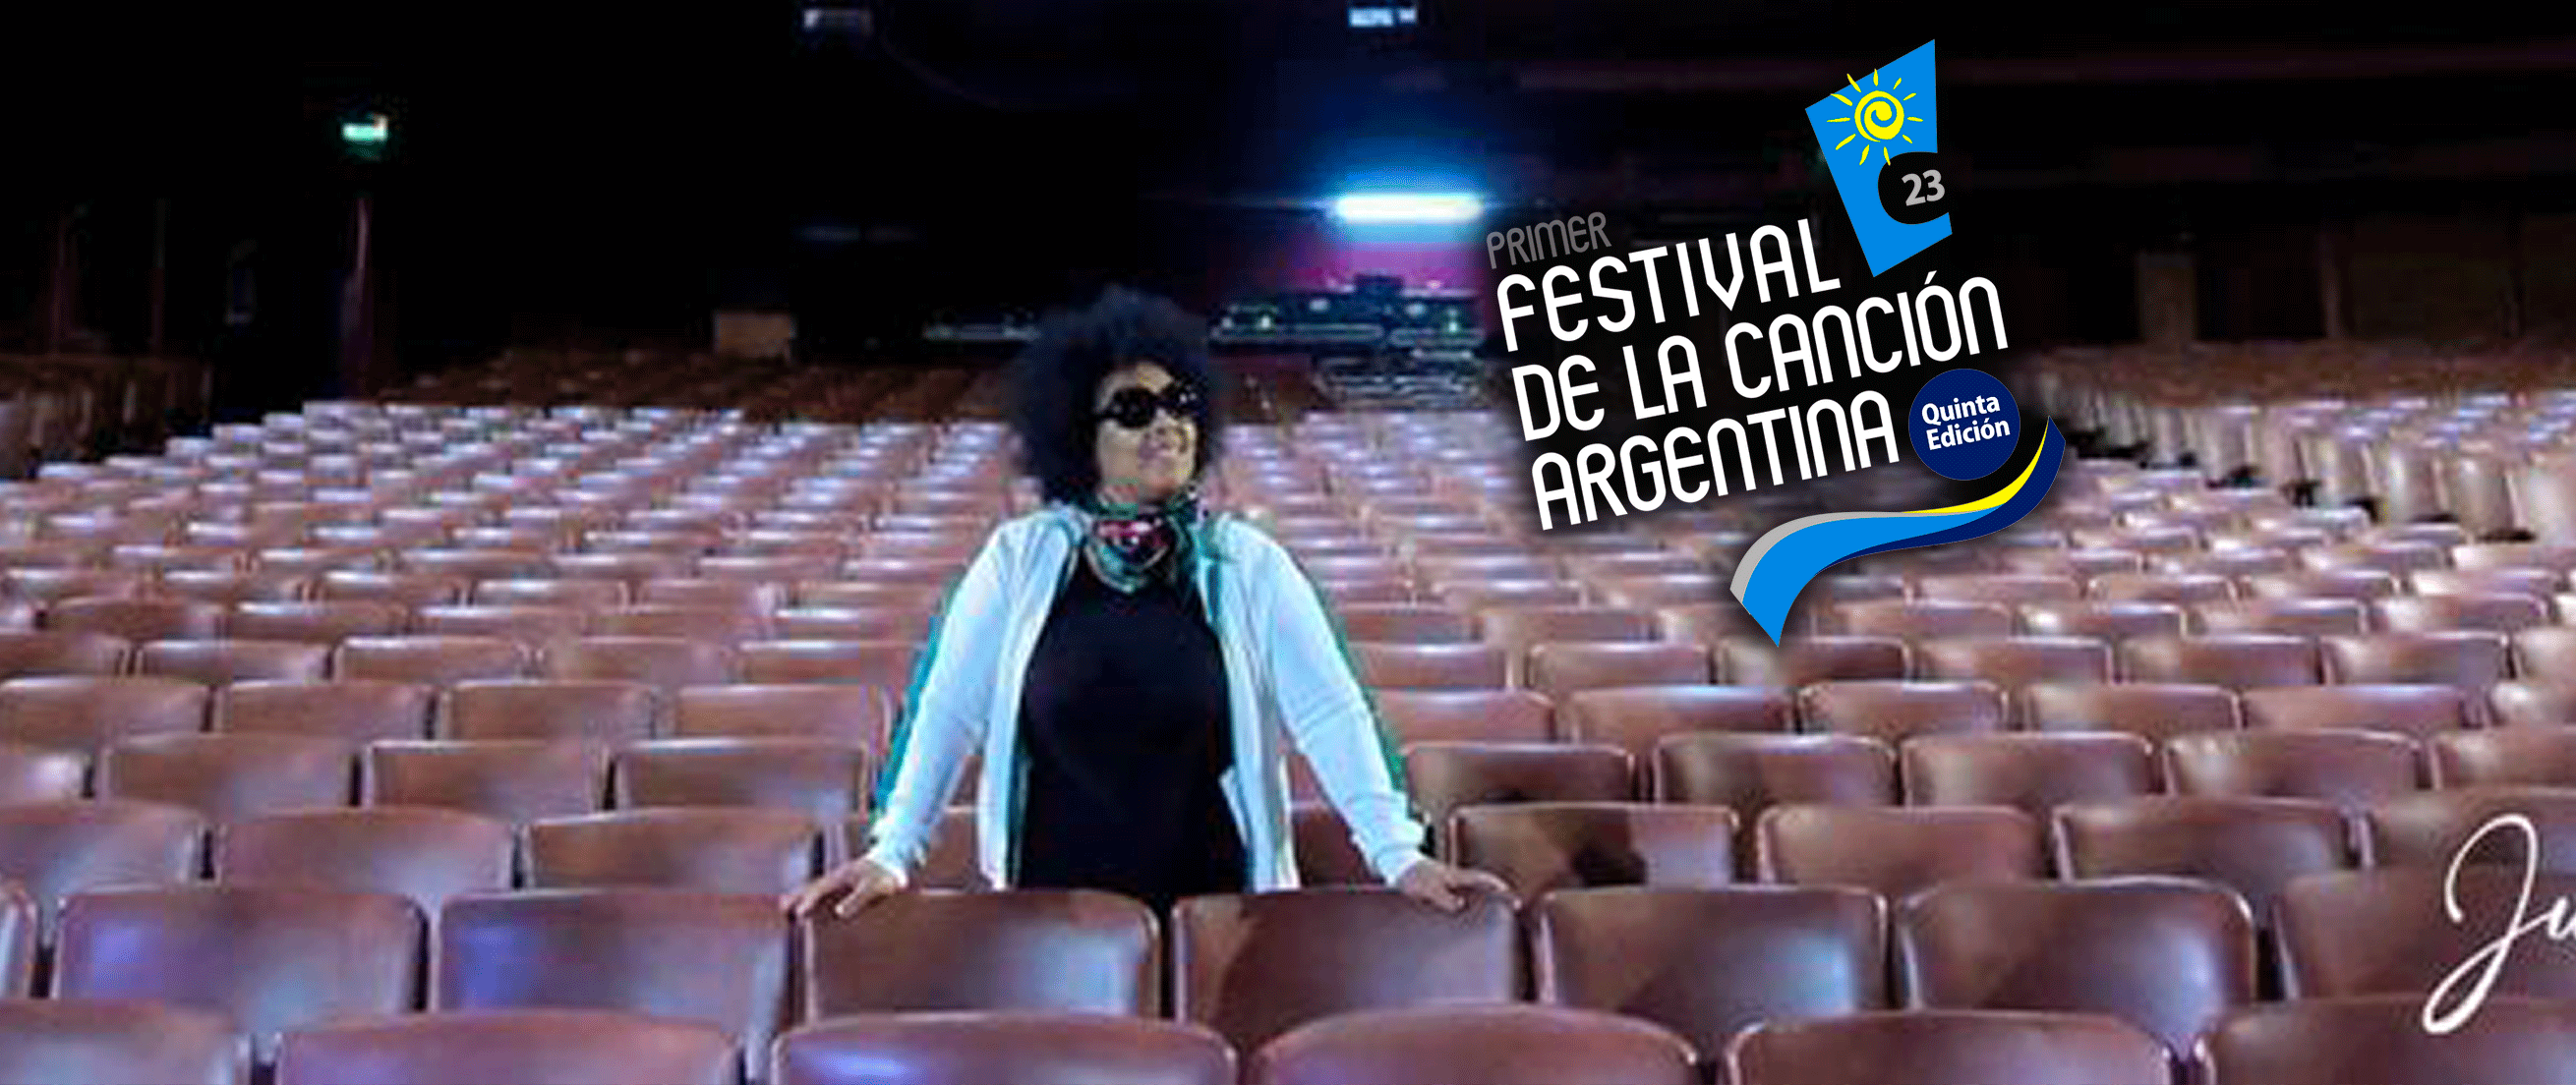 heidy-viciedo-premiada-festival-de-la-cancion-argentina-premio-del-publico-mejor-cancion-representada-por-be-moved--novedades-agencia-booking